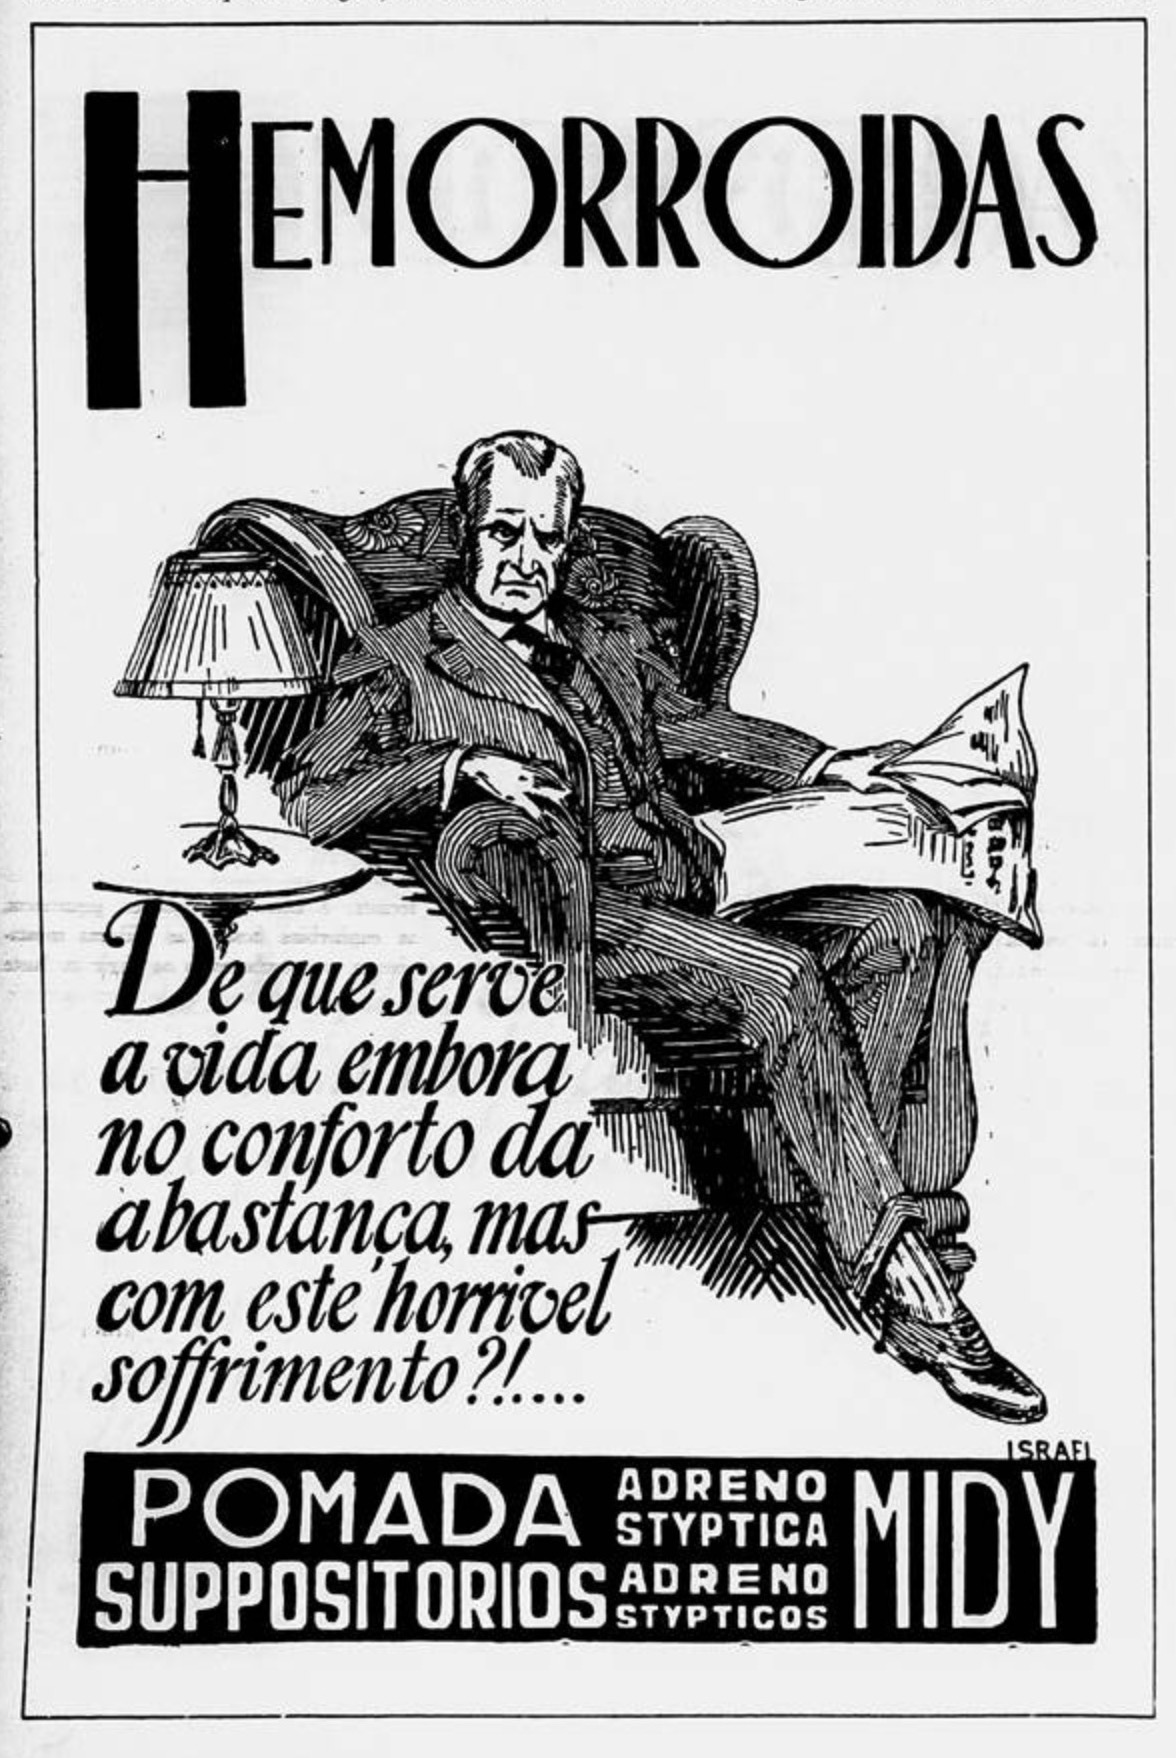 Propaganda antiga veiculada em 1934 promovendo a Pomada Midy para acabar com hemorroida